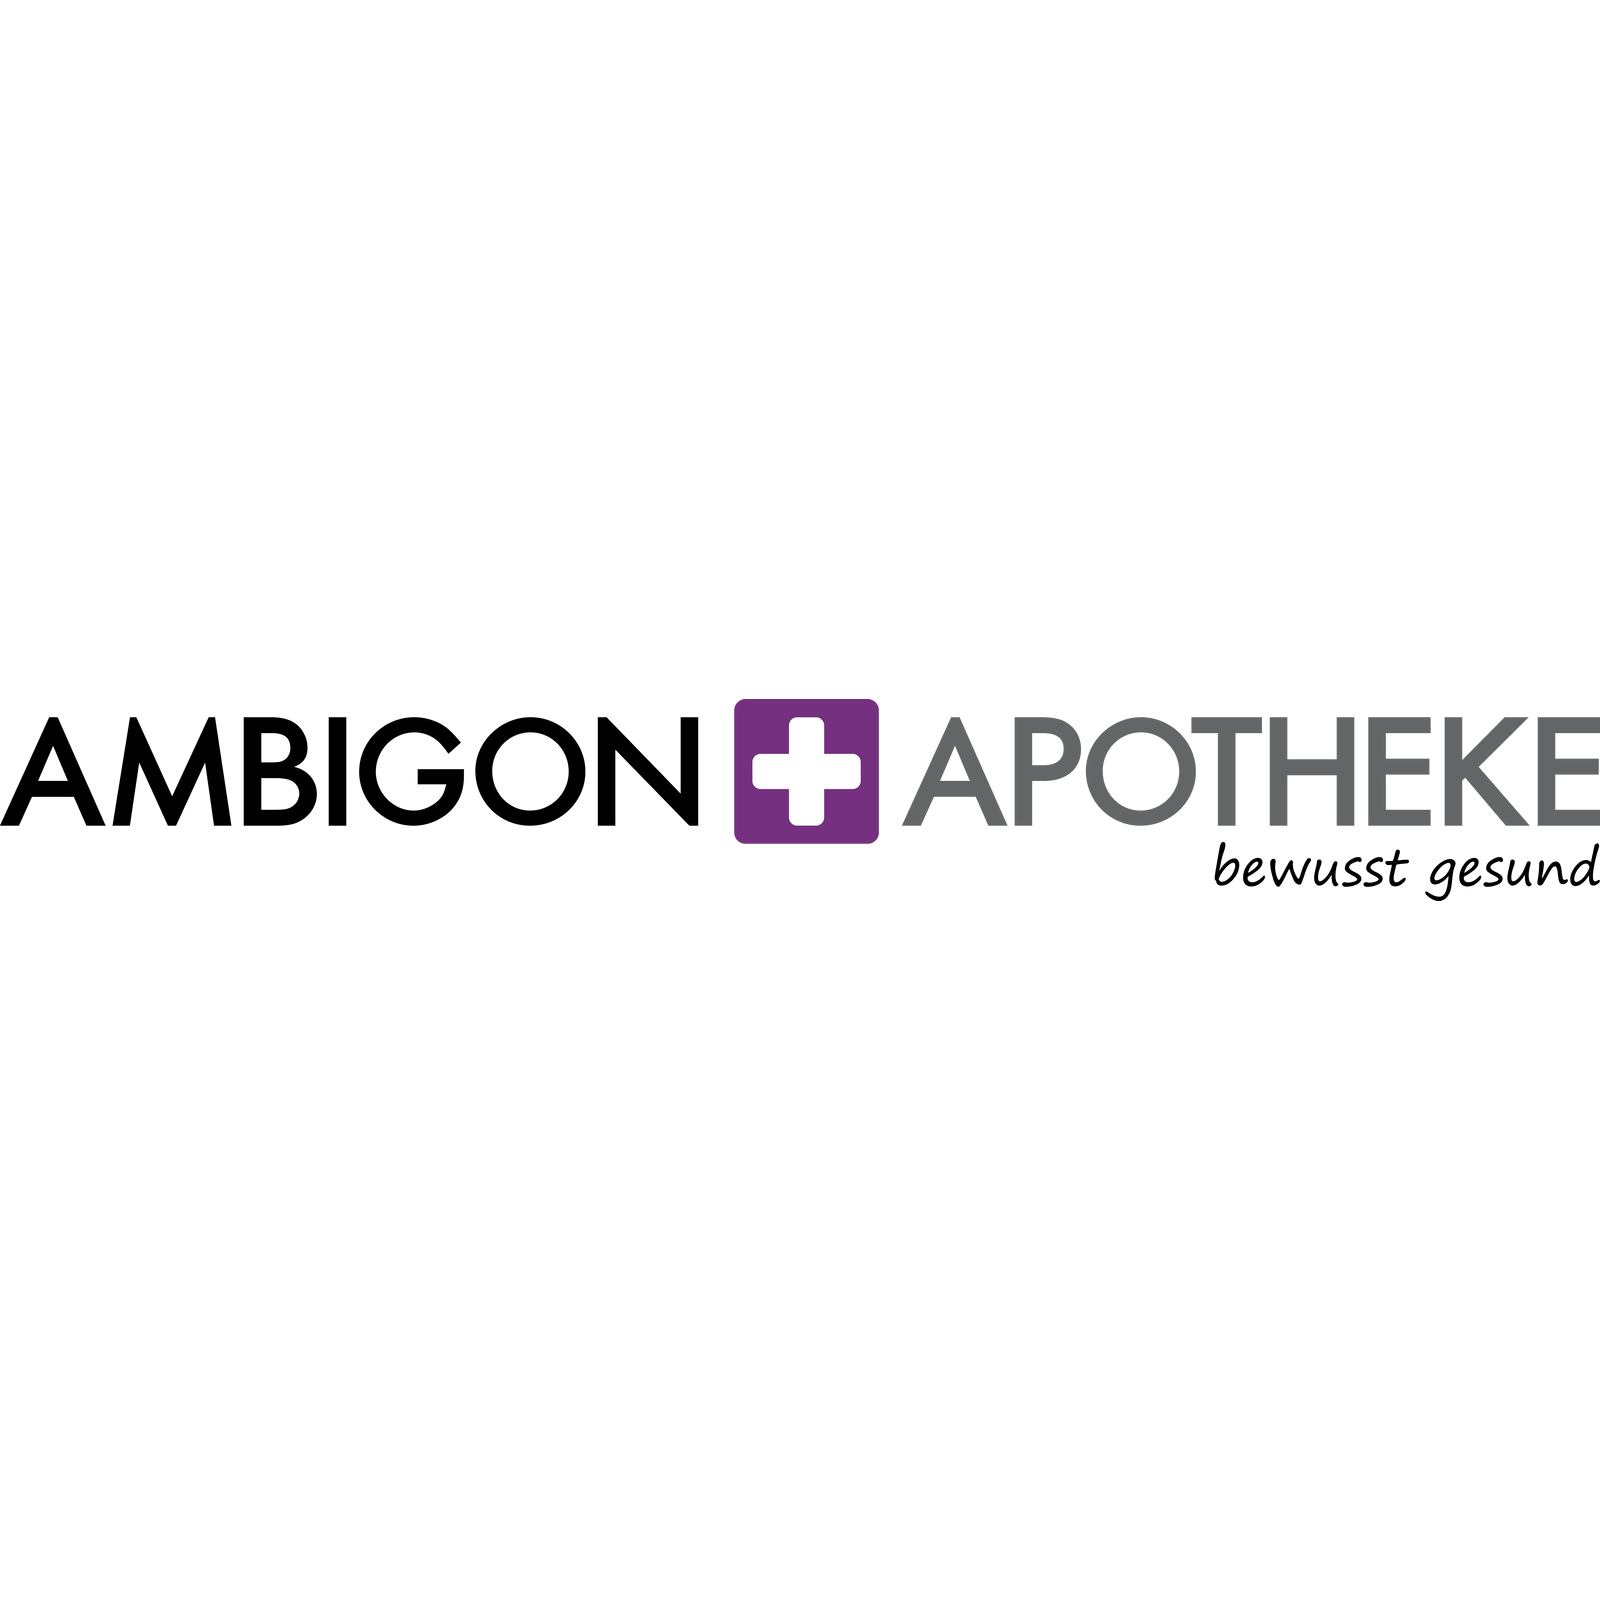 Ambigon Apotheke in München - Logo